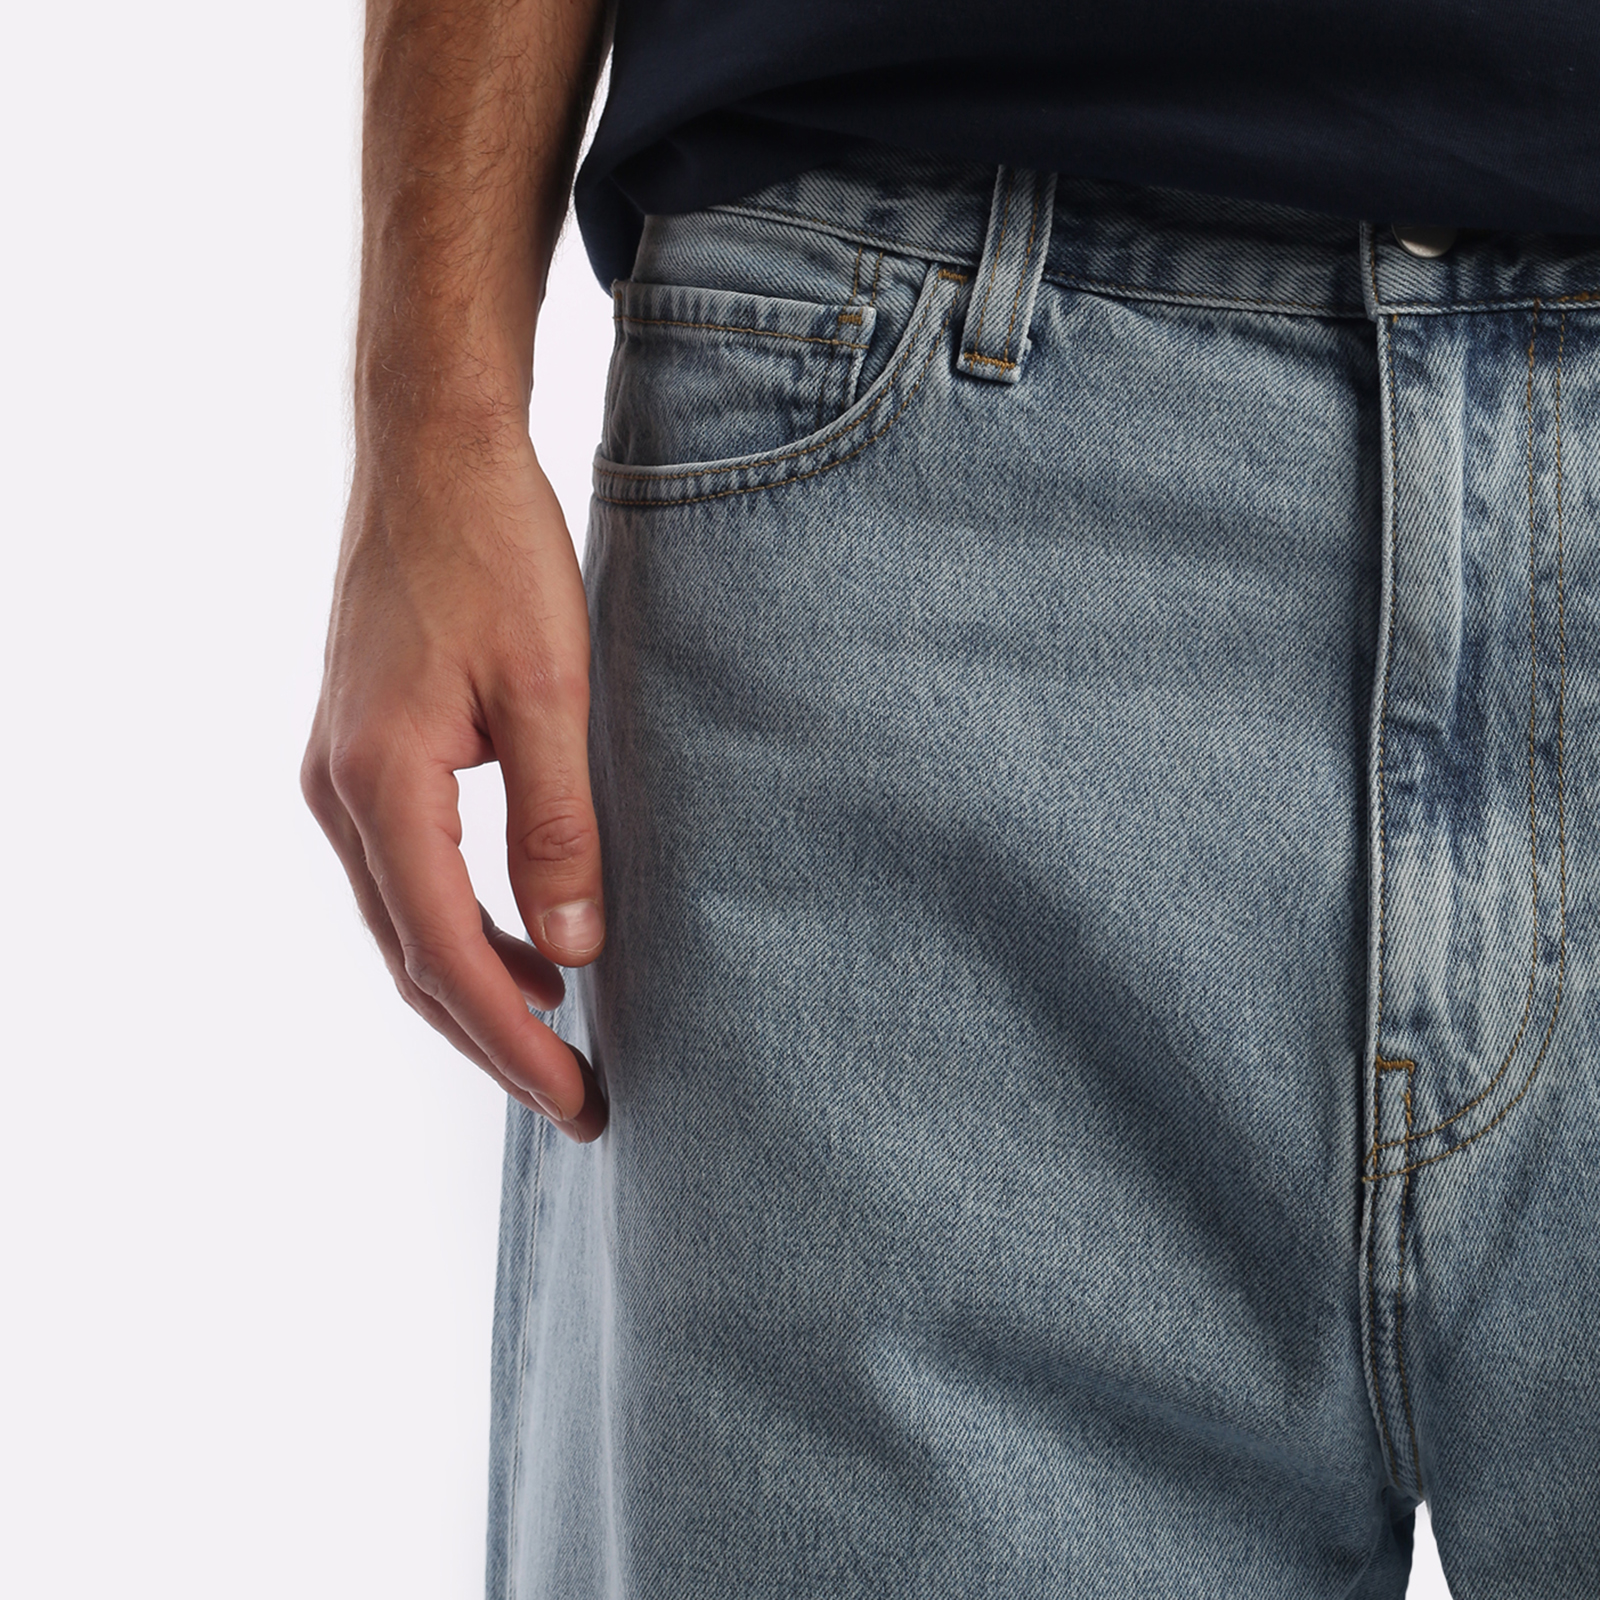 мужские брюки Carhartt WIP Robertson  (I030468-blue)  - цена, описание, фото 4